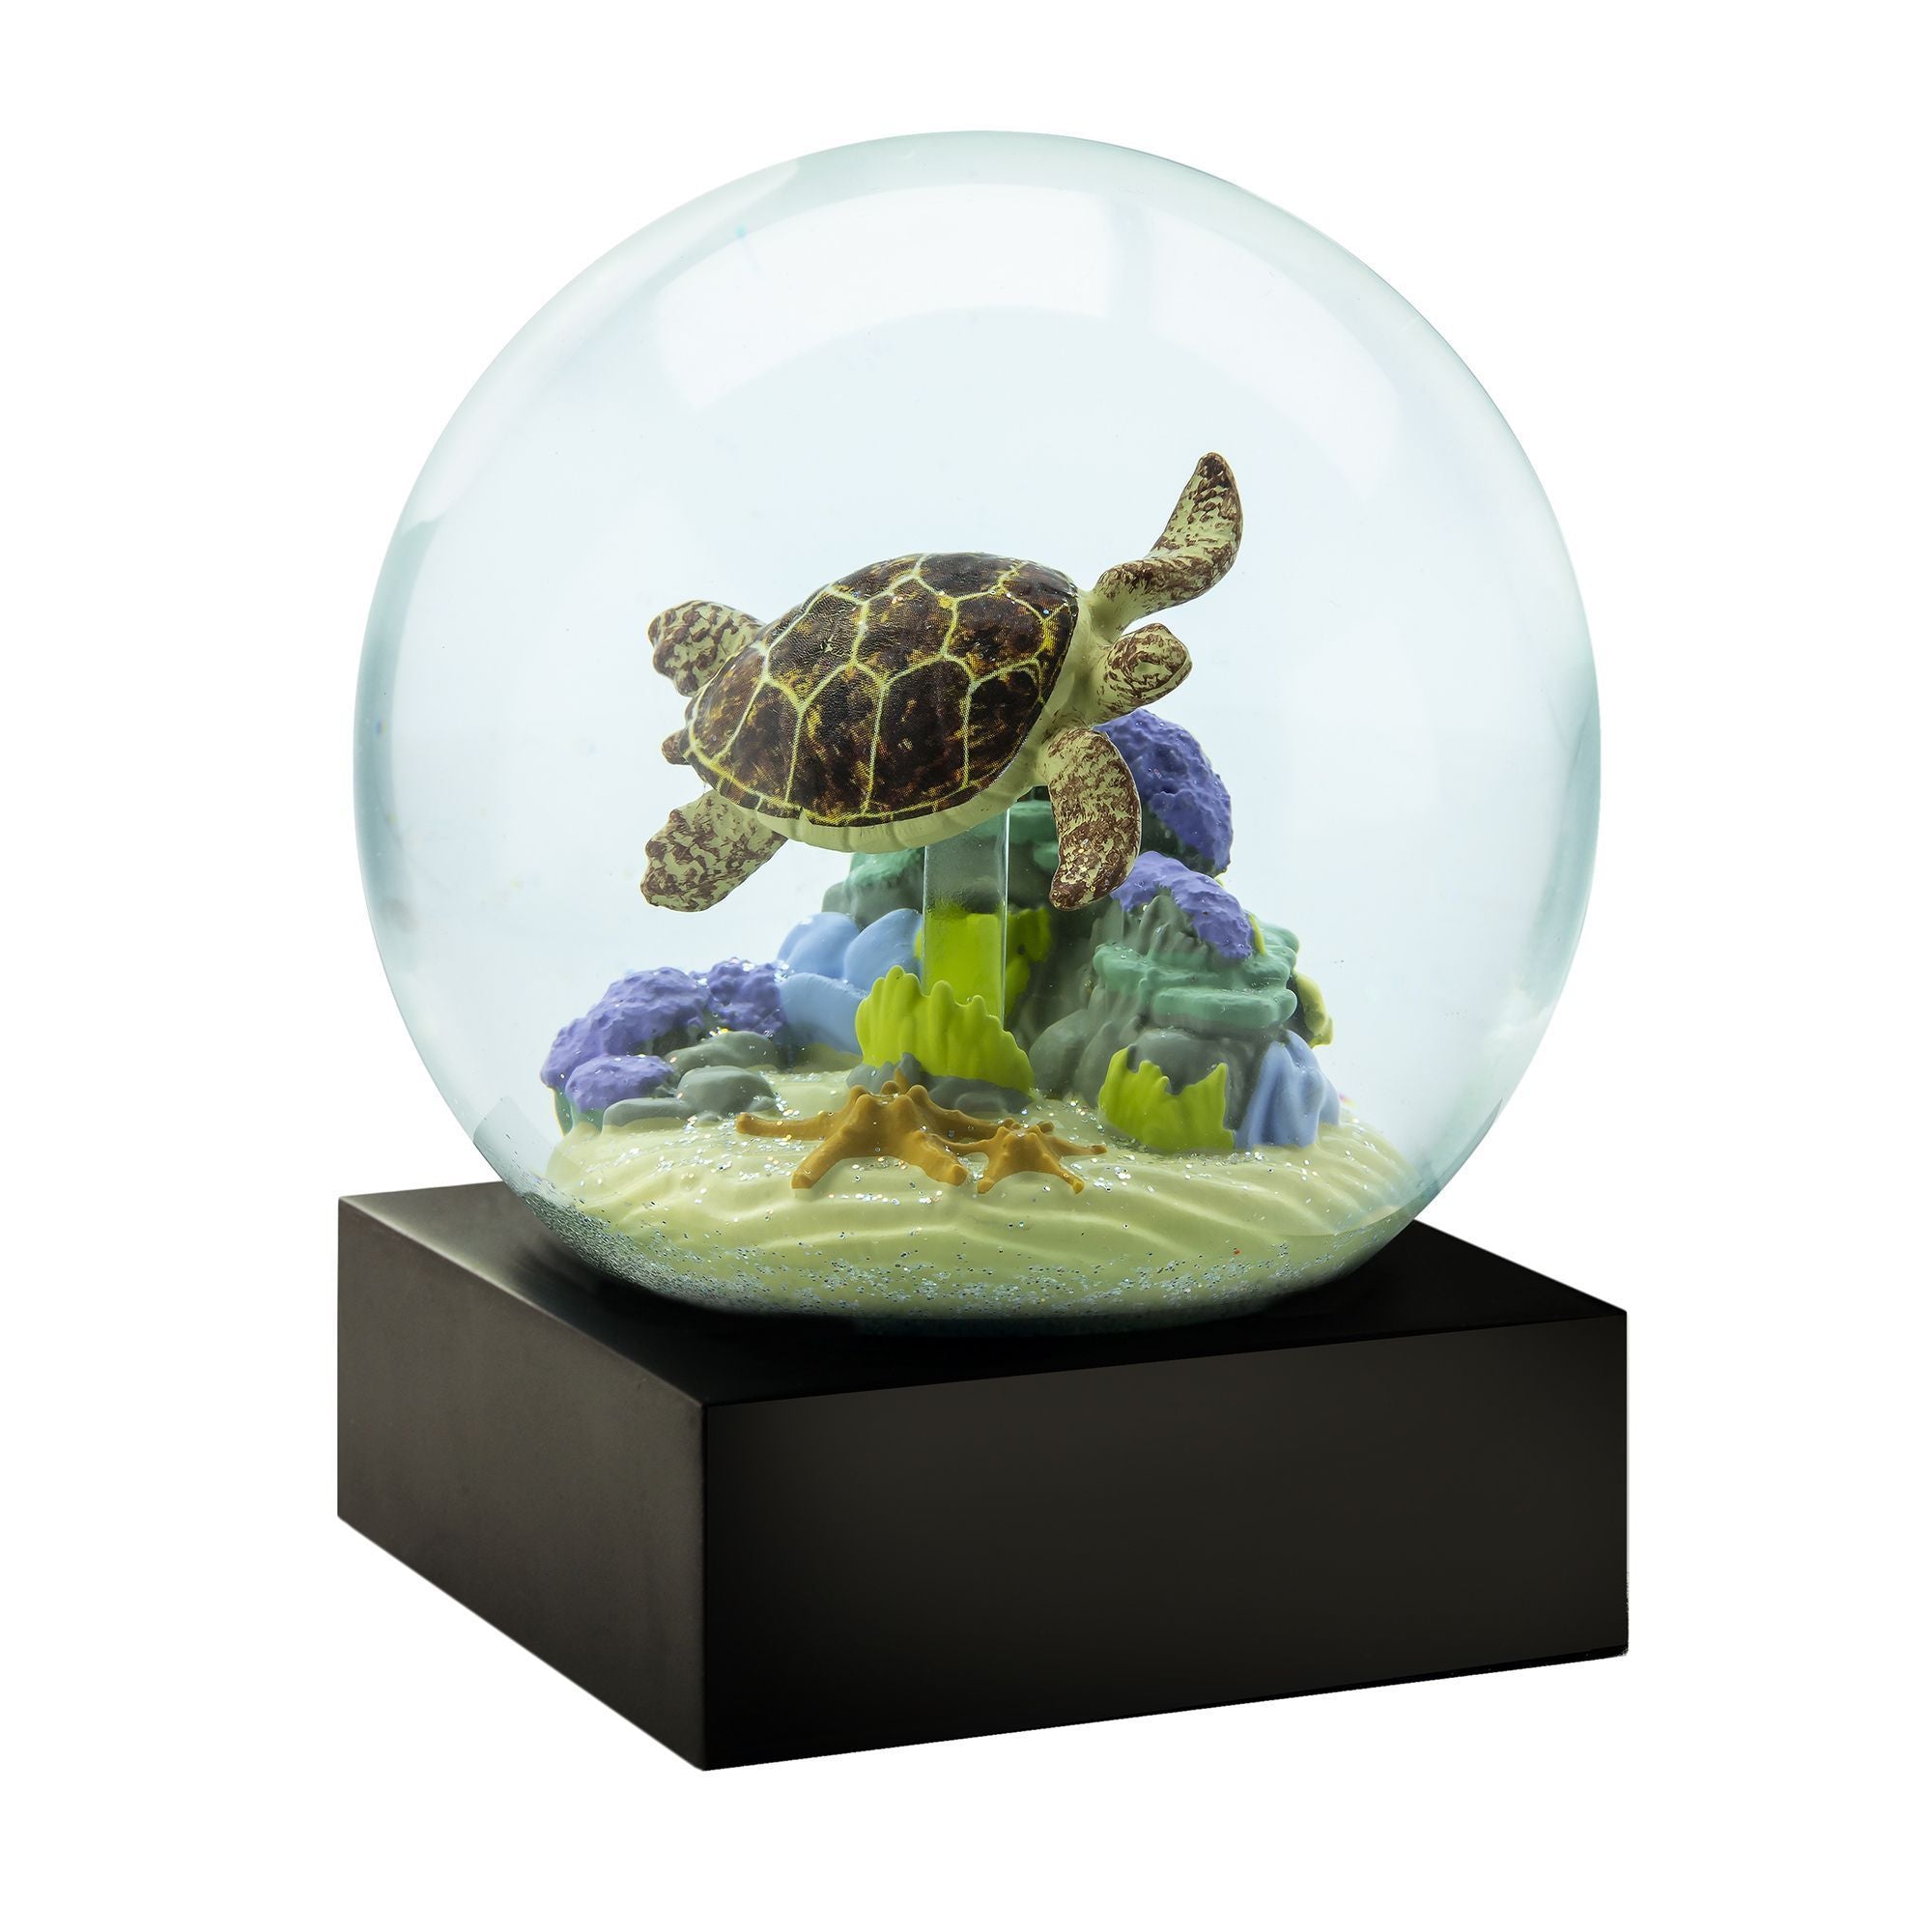 Chłodny śnieżny globes żółw morski